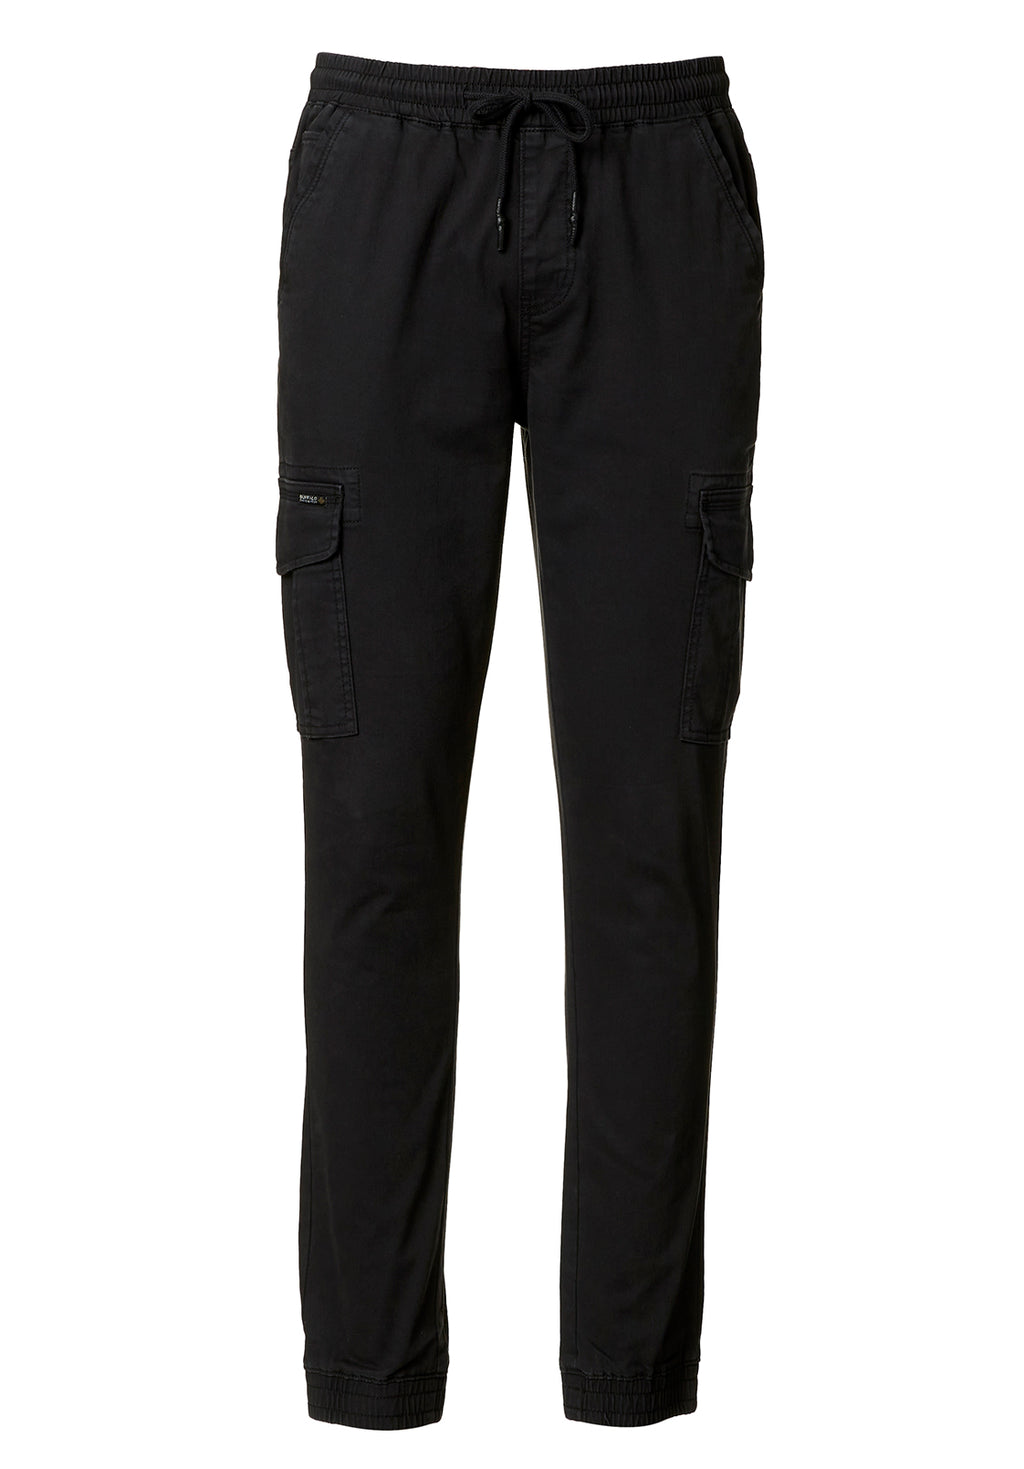 Pants & Jumpsuits  Black Aeropostale Fit Flare Sweatpants Medium